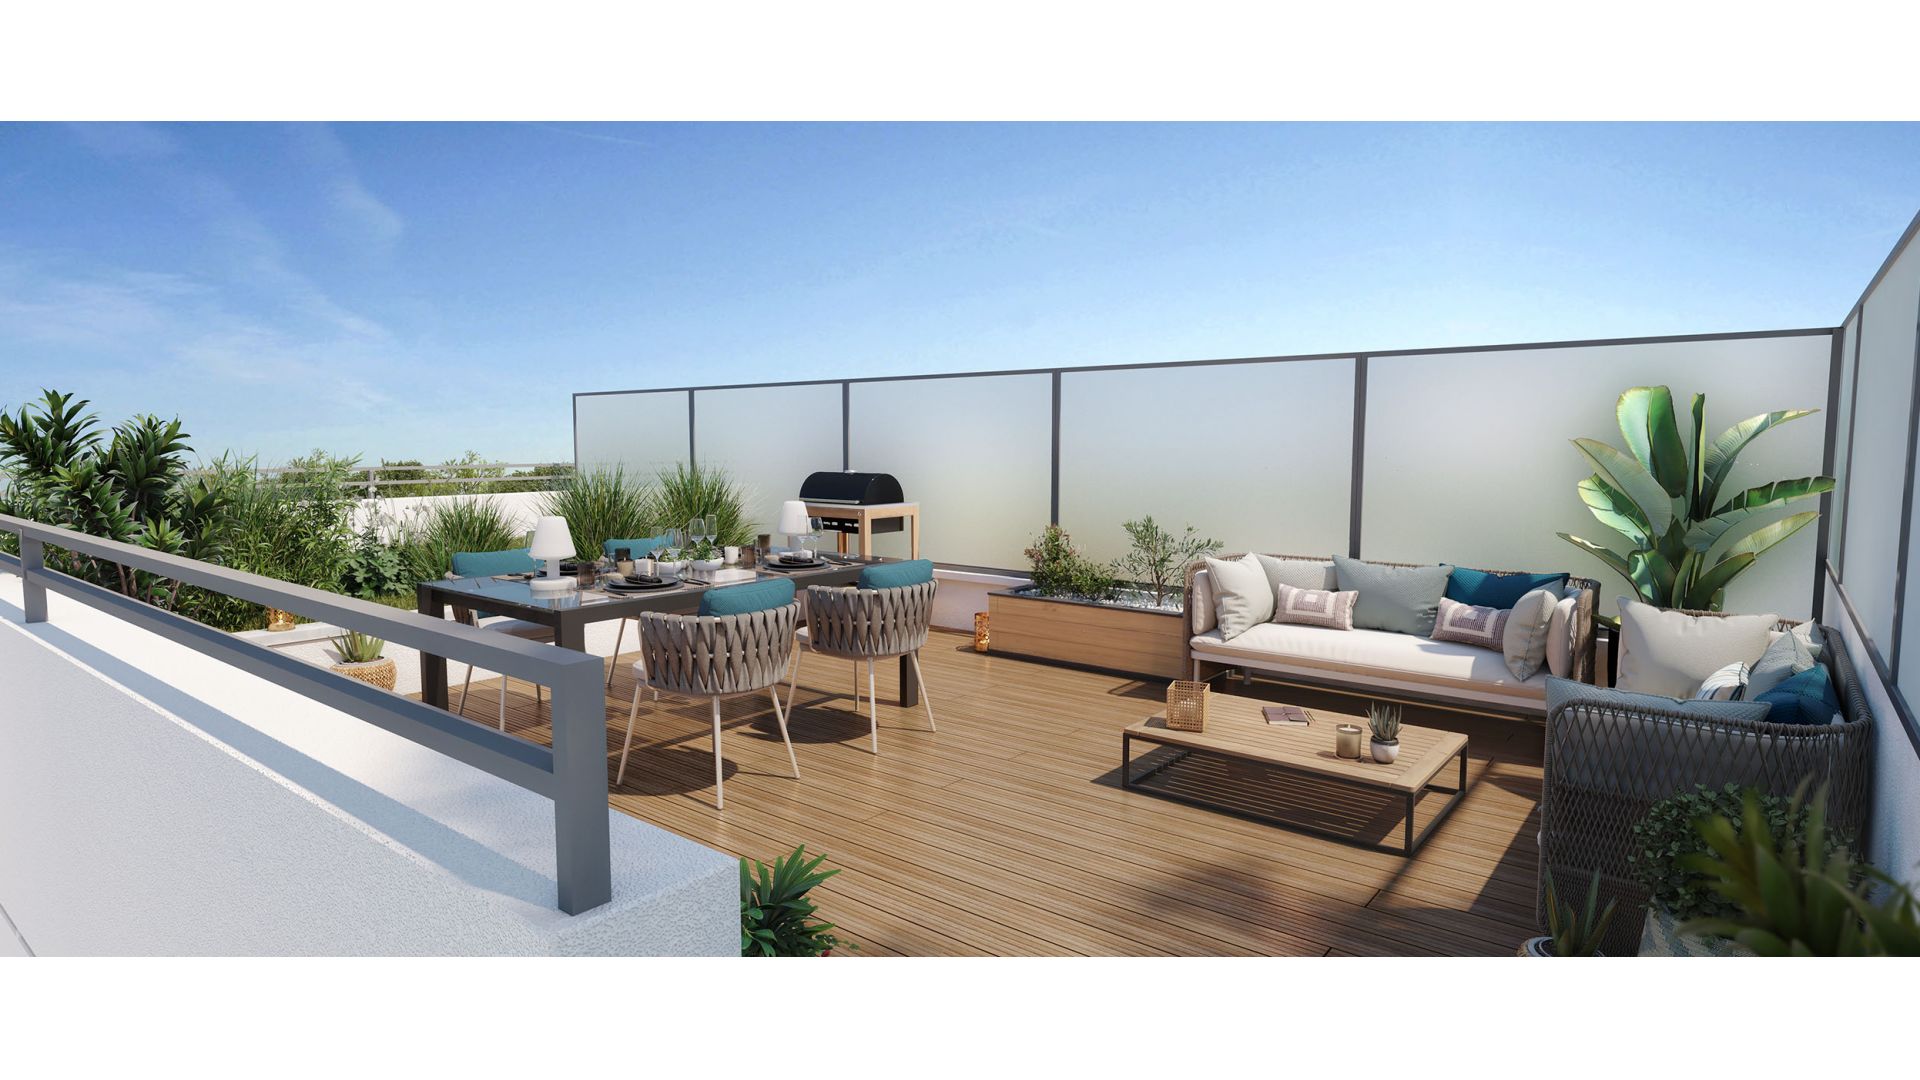 Greencity Immobilier - Résidence Amplitude - achat appartements neufs du T1 au T5 - Bezons - 95870 - Bât Terrasse